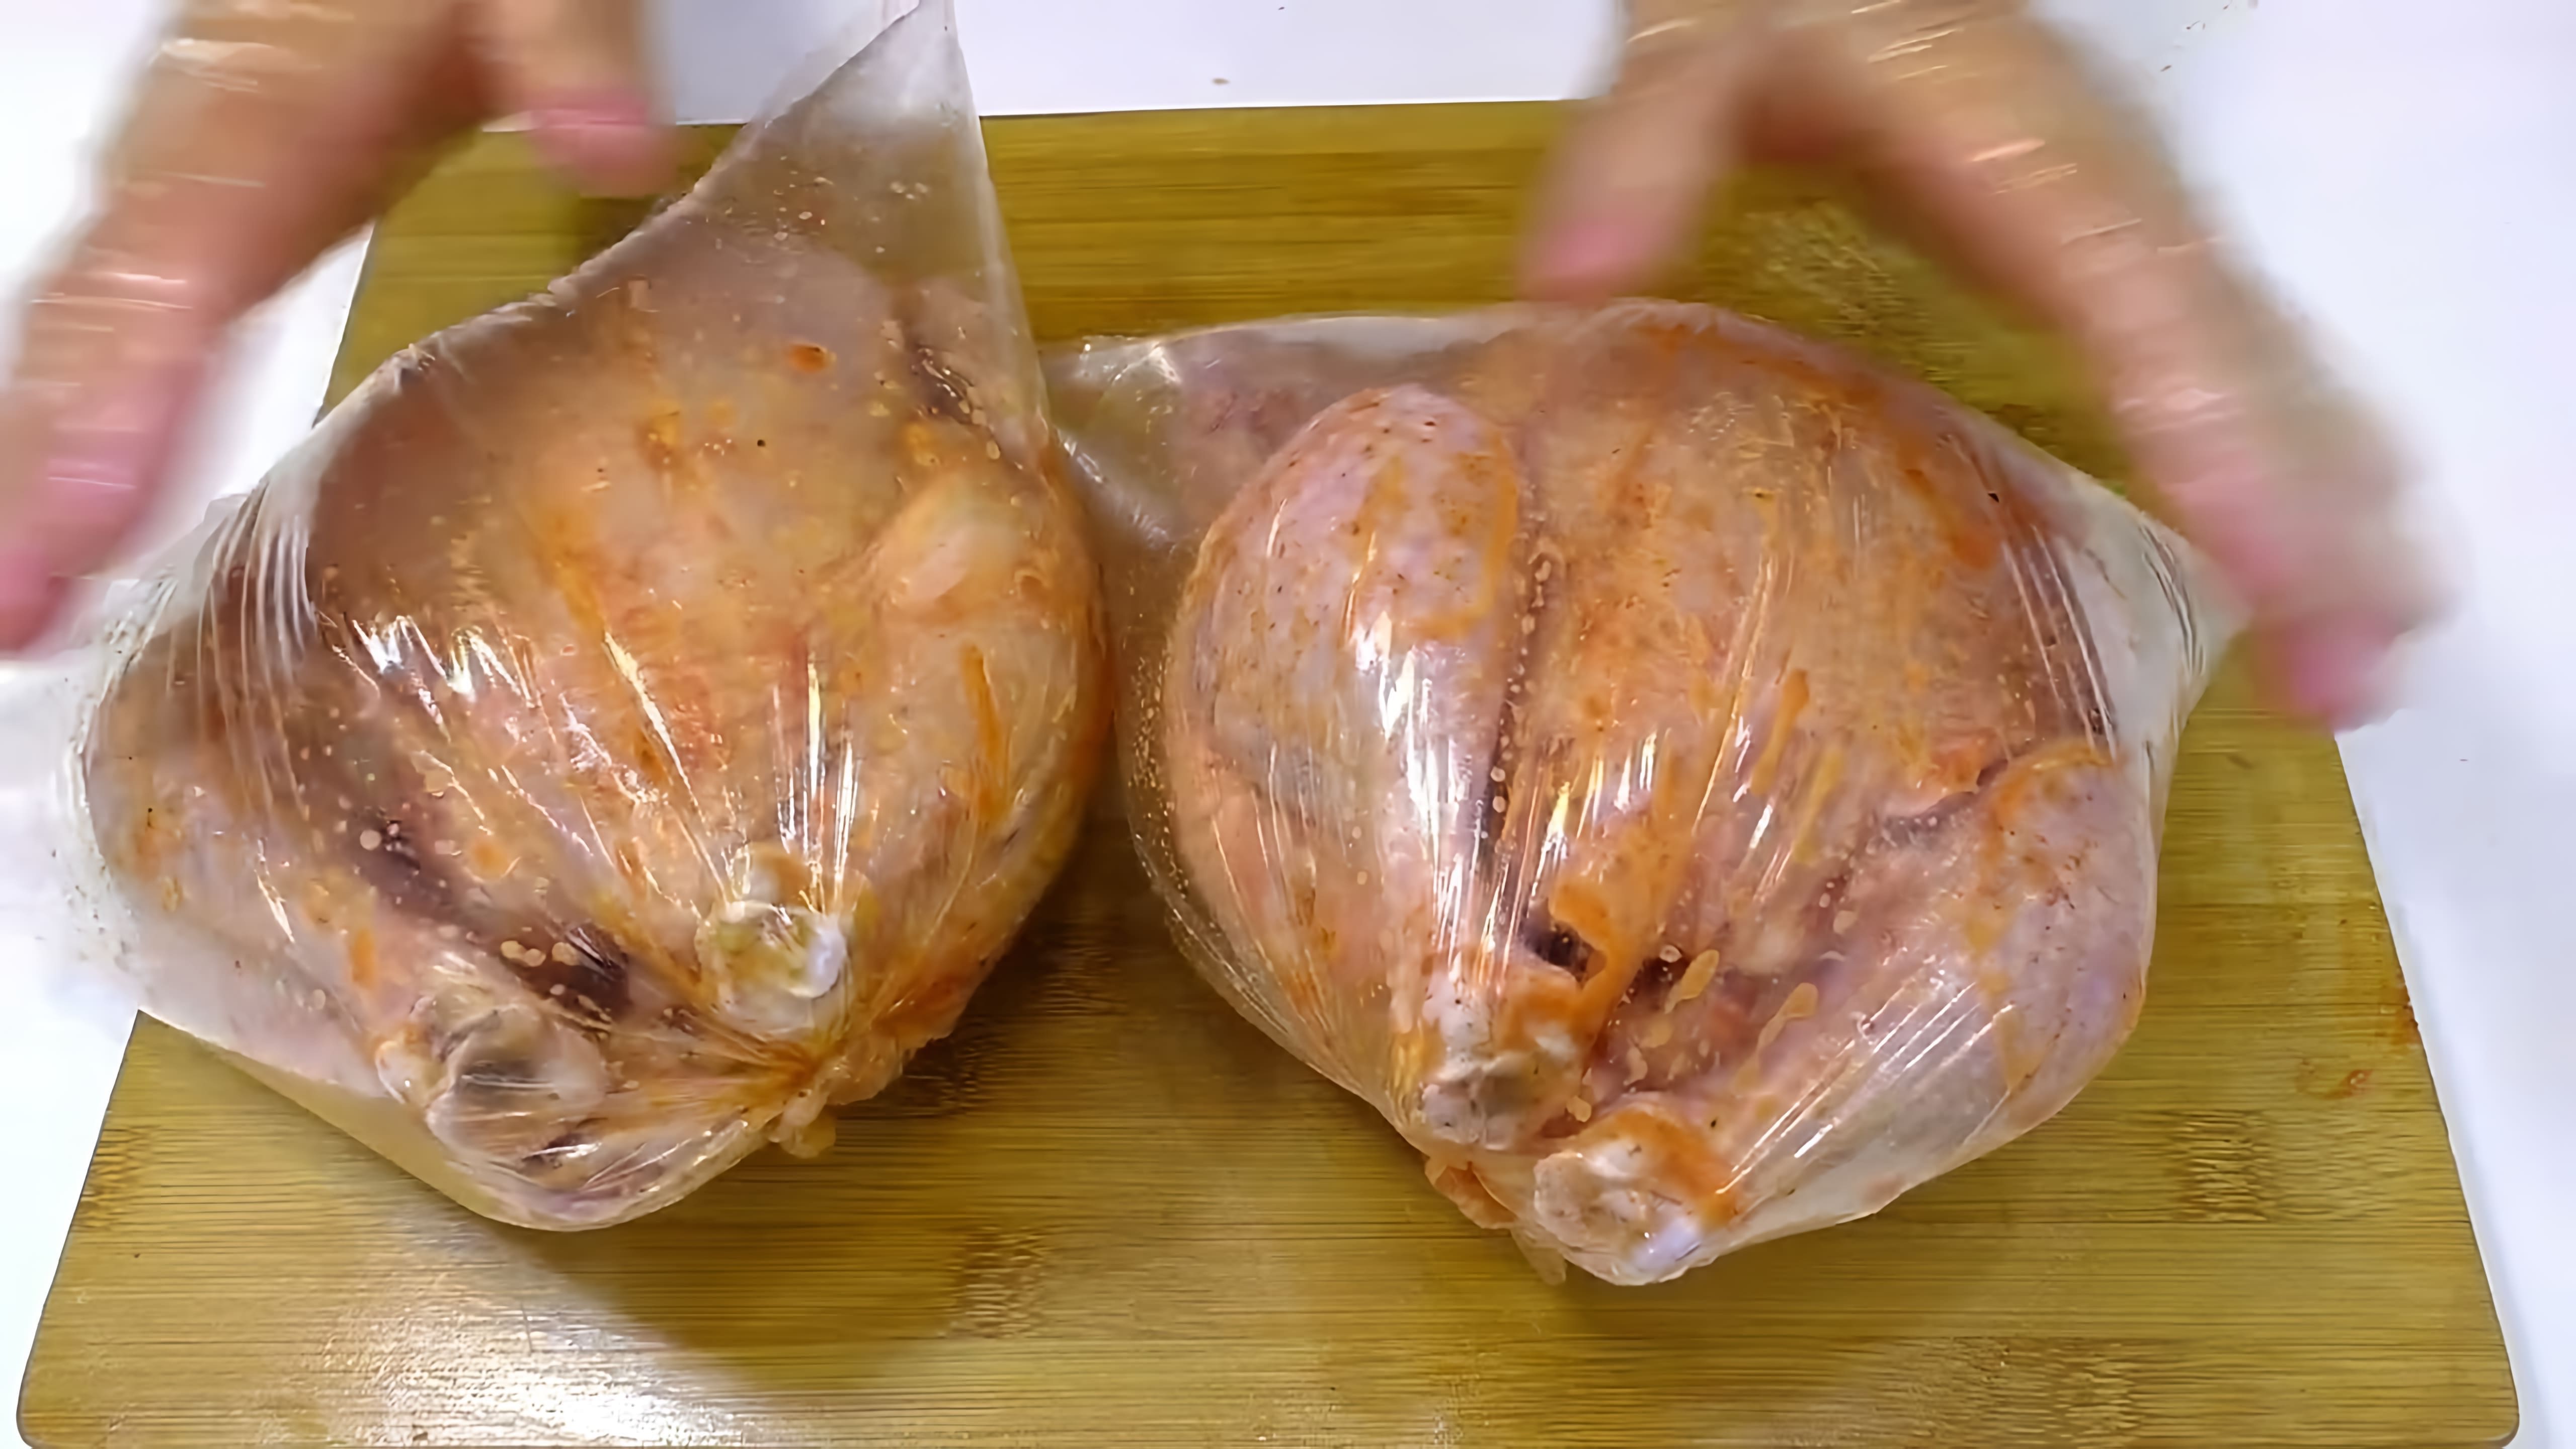 В этом видео демонстрируется процесс приготовления курицы гриль в обычной газовой духовке